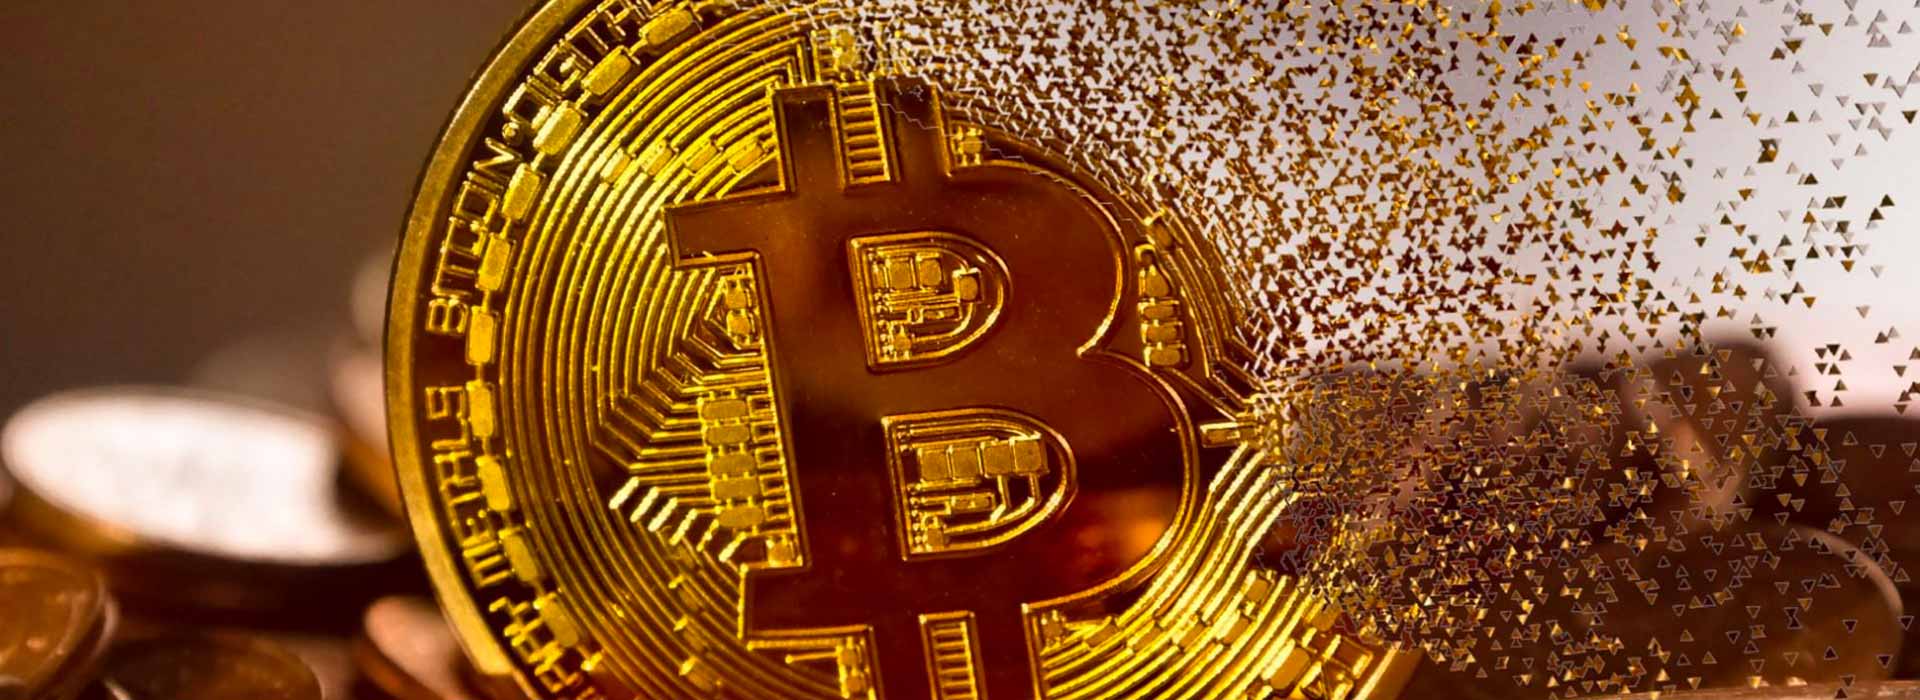 Transazioni Bitcoin e tecnologia Blockchain interessano le imprese